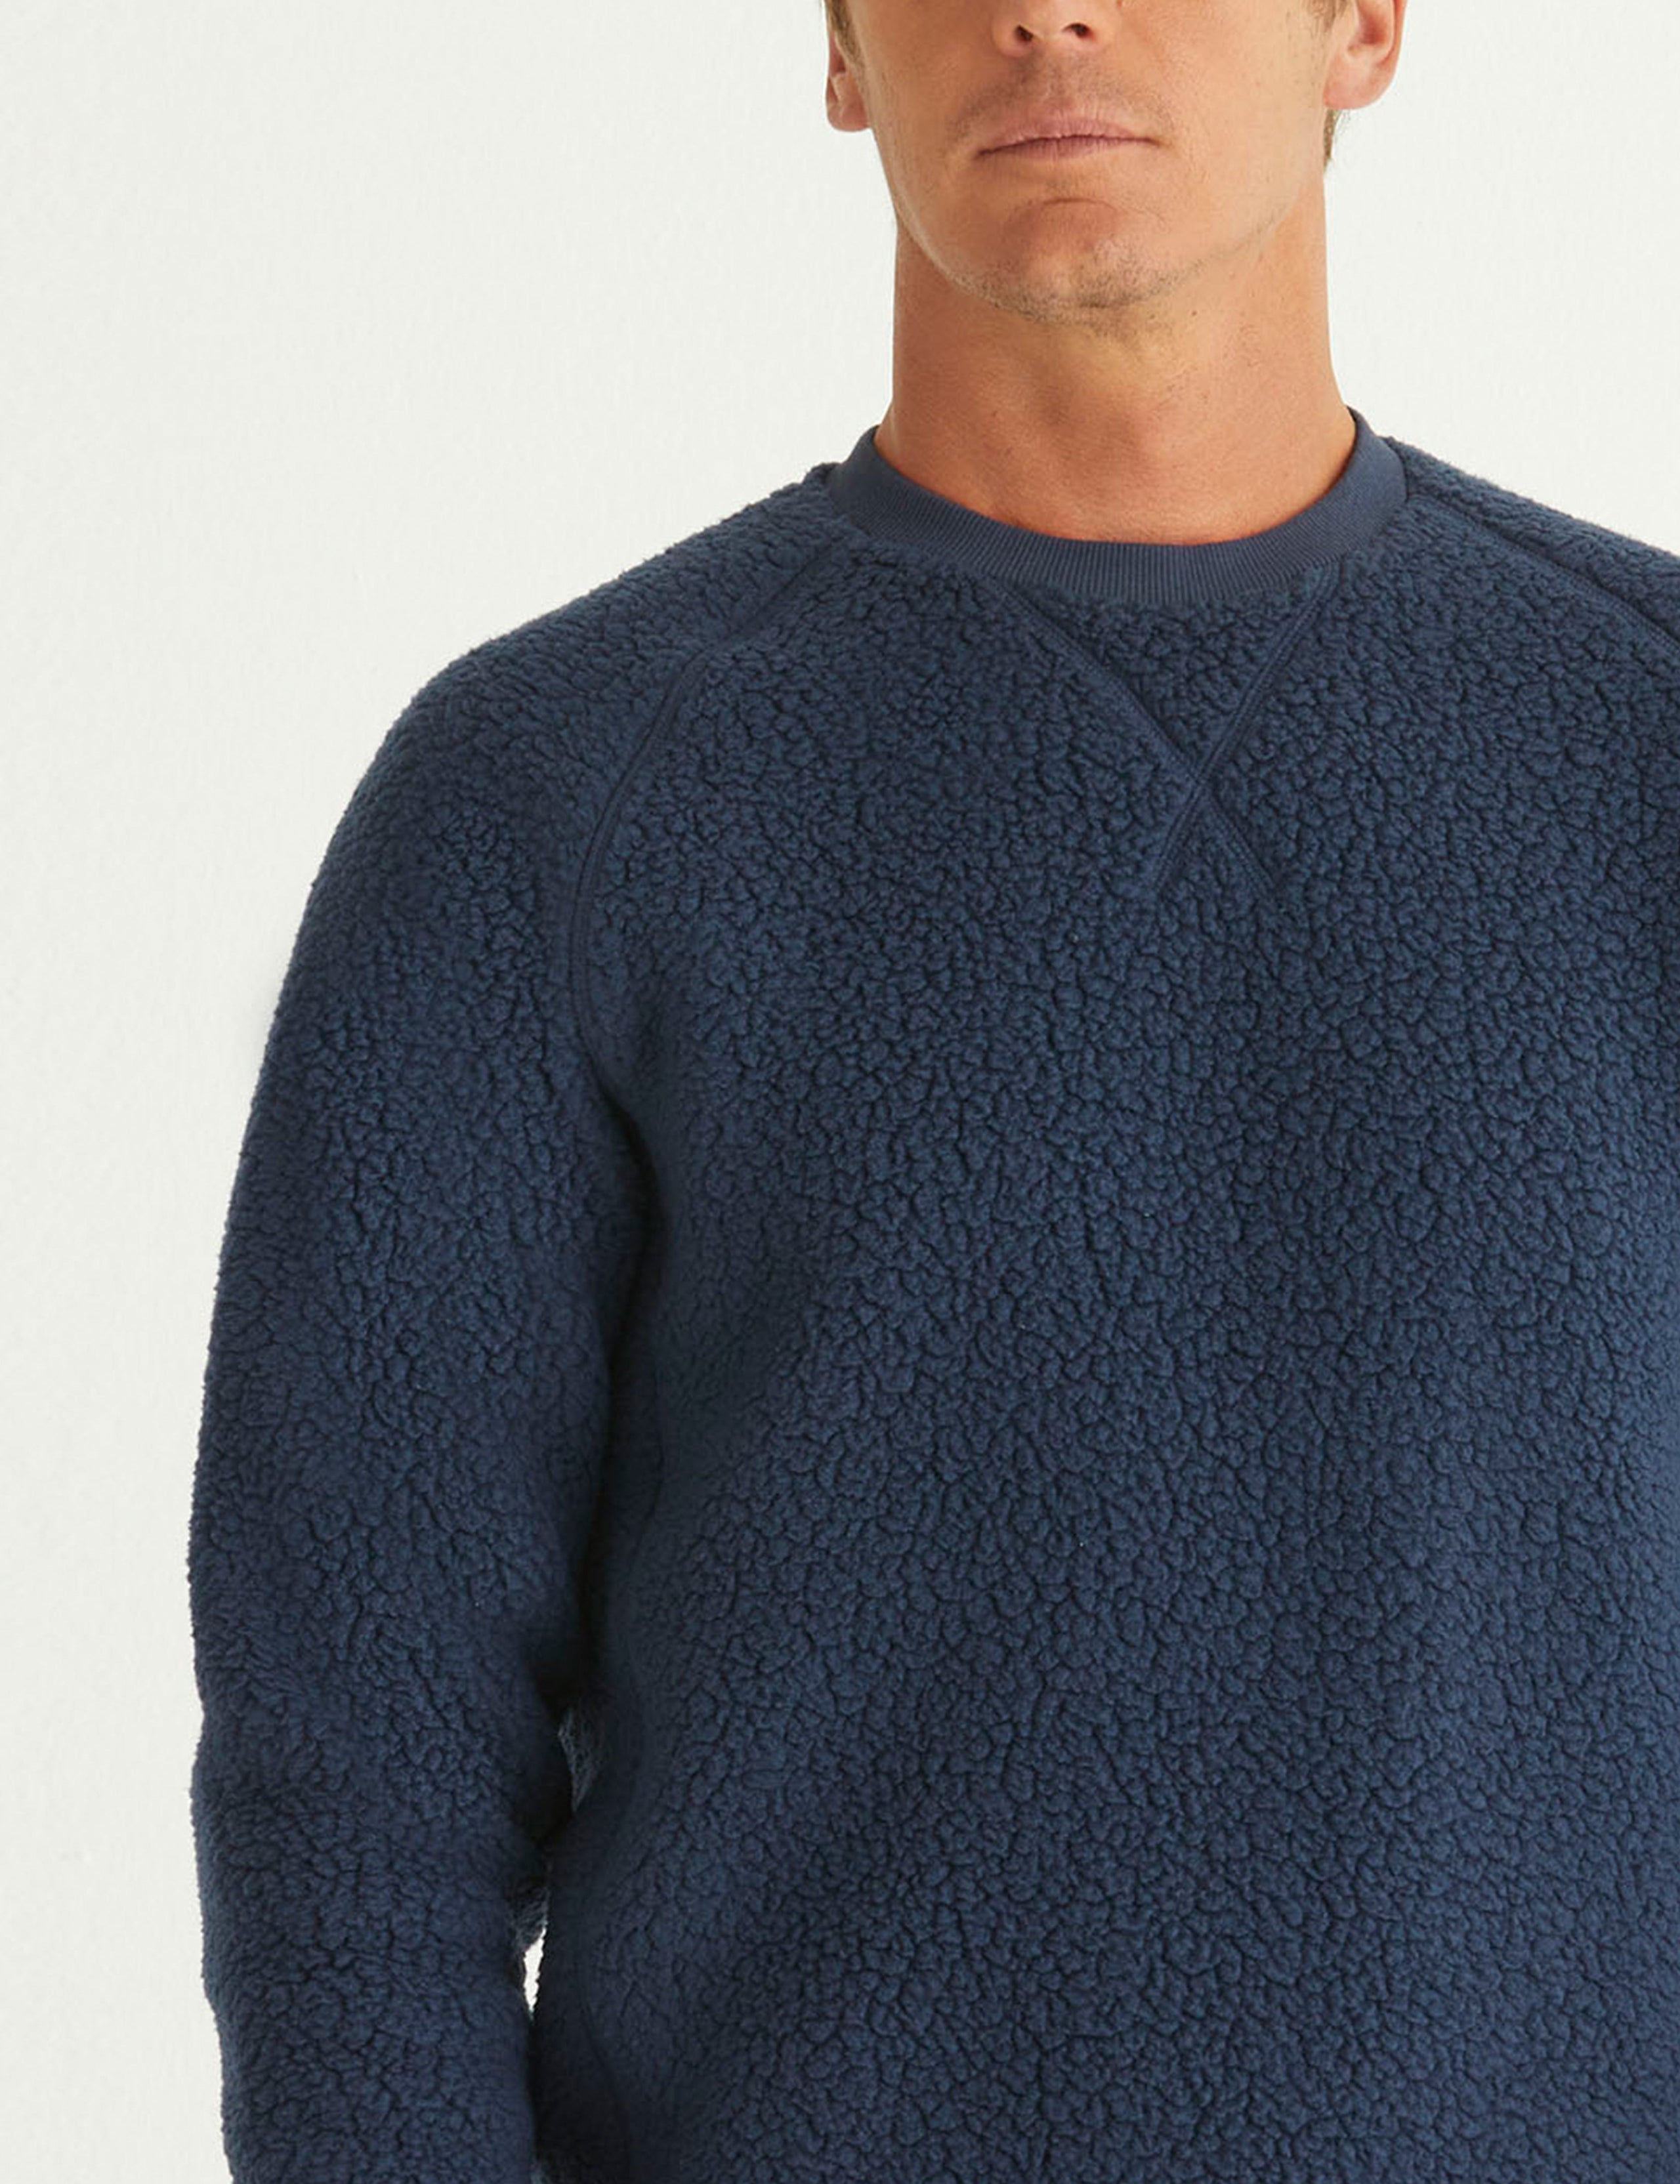 man wearing blue fleece sweater